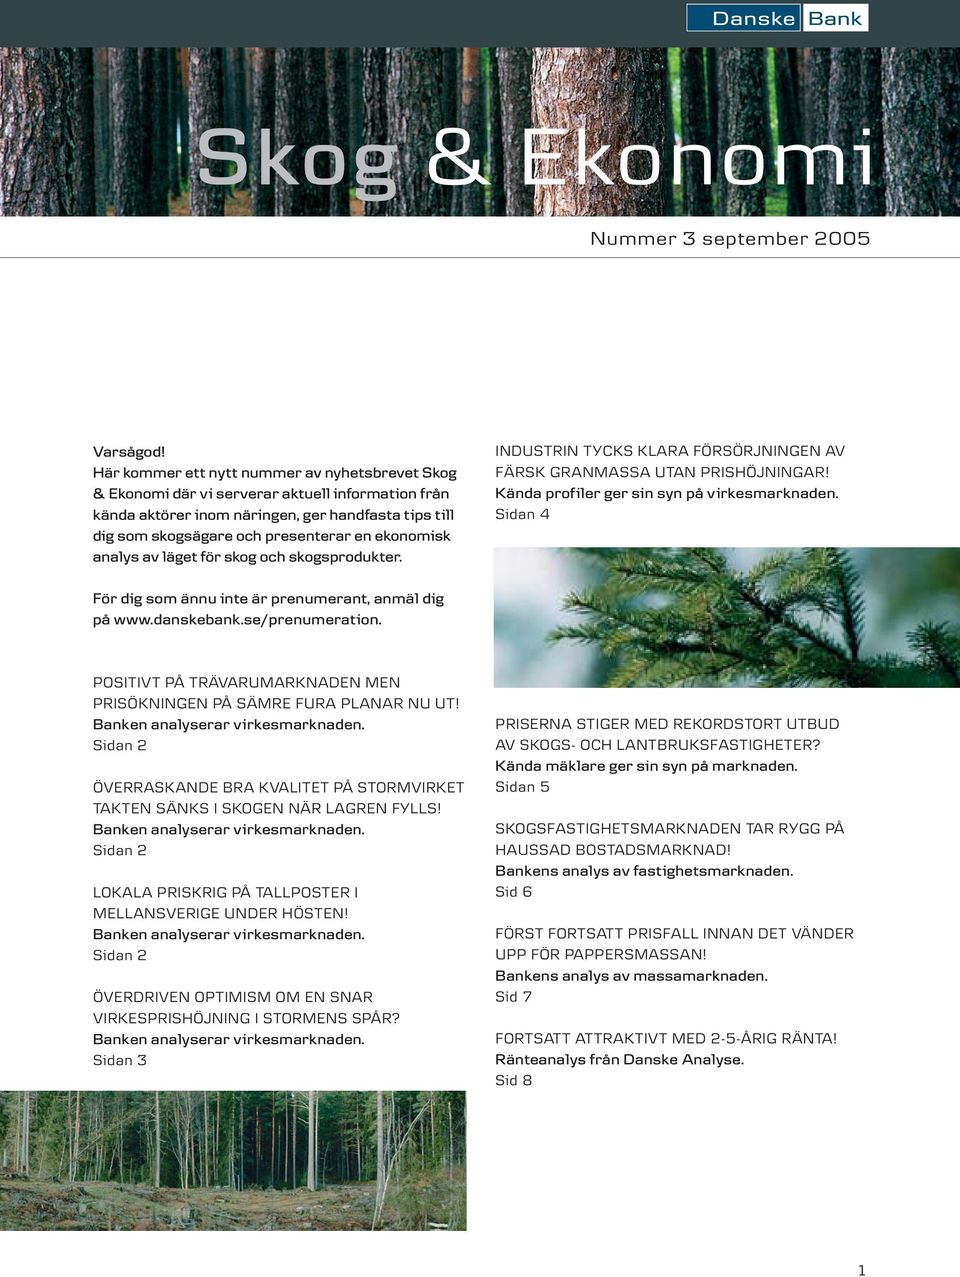 analys av läget för skog och skogsprodukter. INDUSTRIN TYCKS KLARA FÖRSÖRJNINGEN AV FÄRSK GRANMASSA UTAN PRISHÖJNINGAR! Kända profiler ger sin syn på virkesmarknaden.